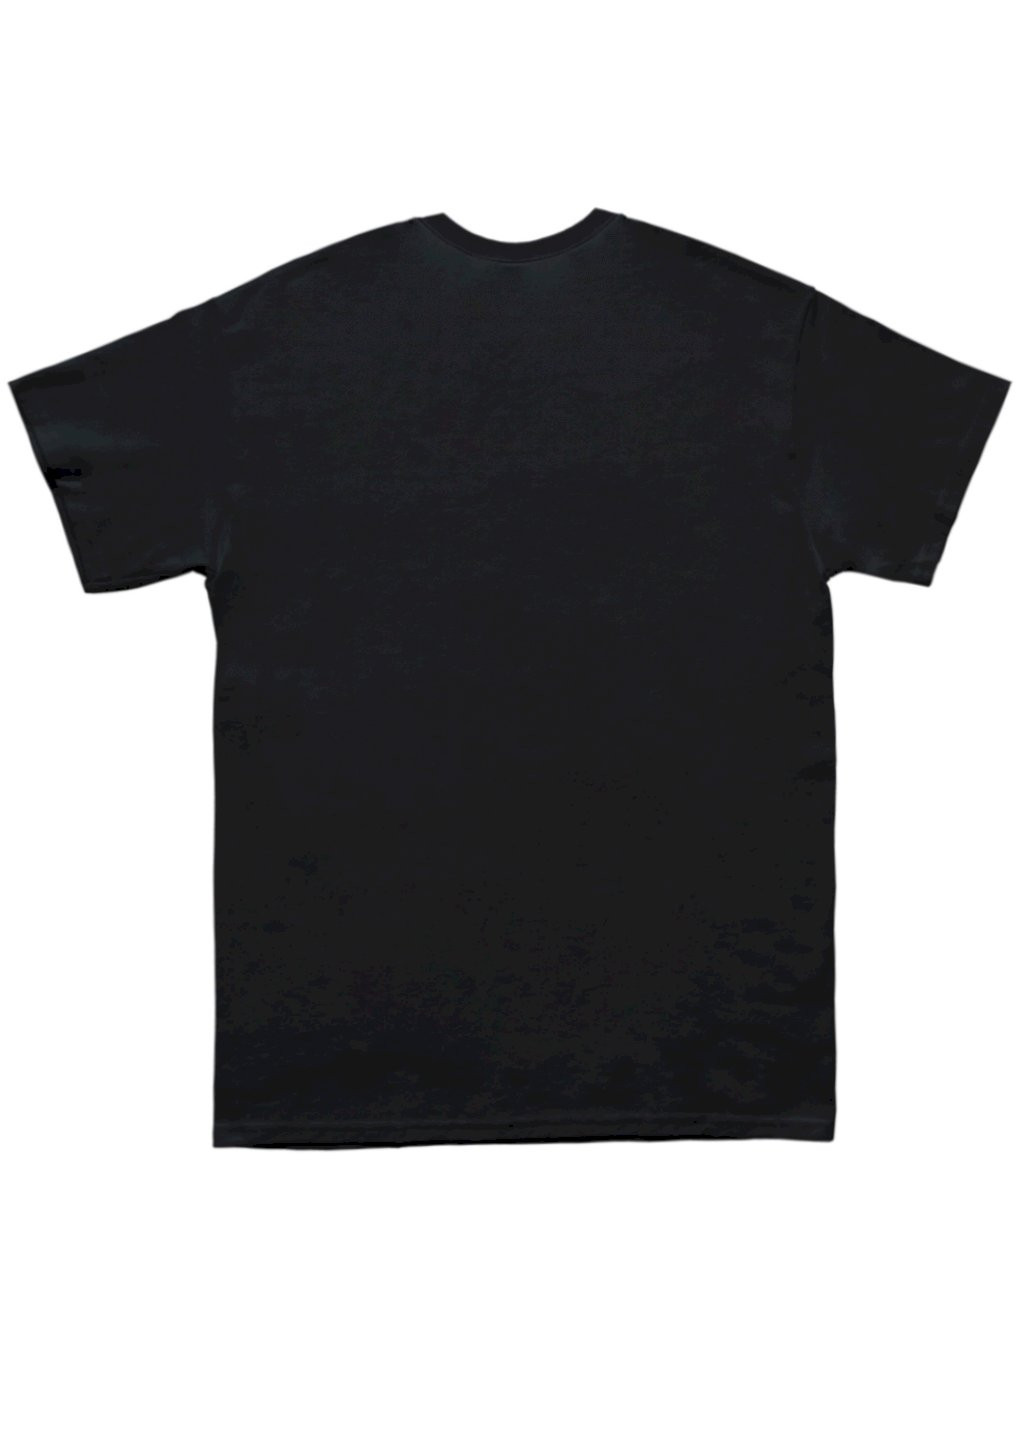 Черная футболка мужская черная "новые измерения" Trace of Space